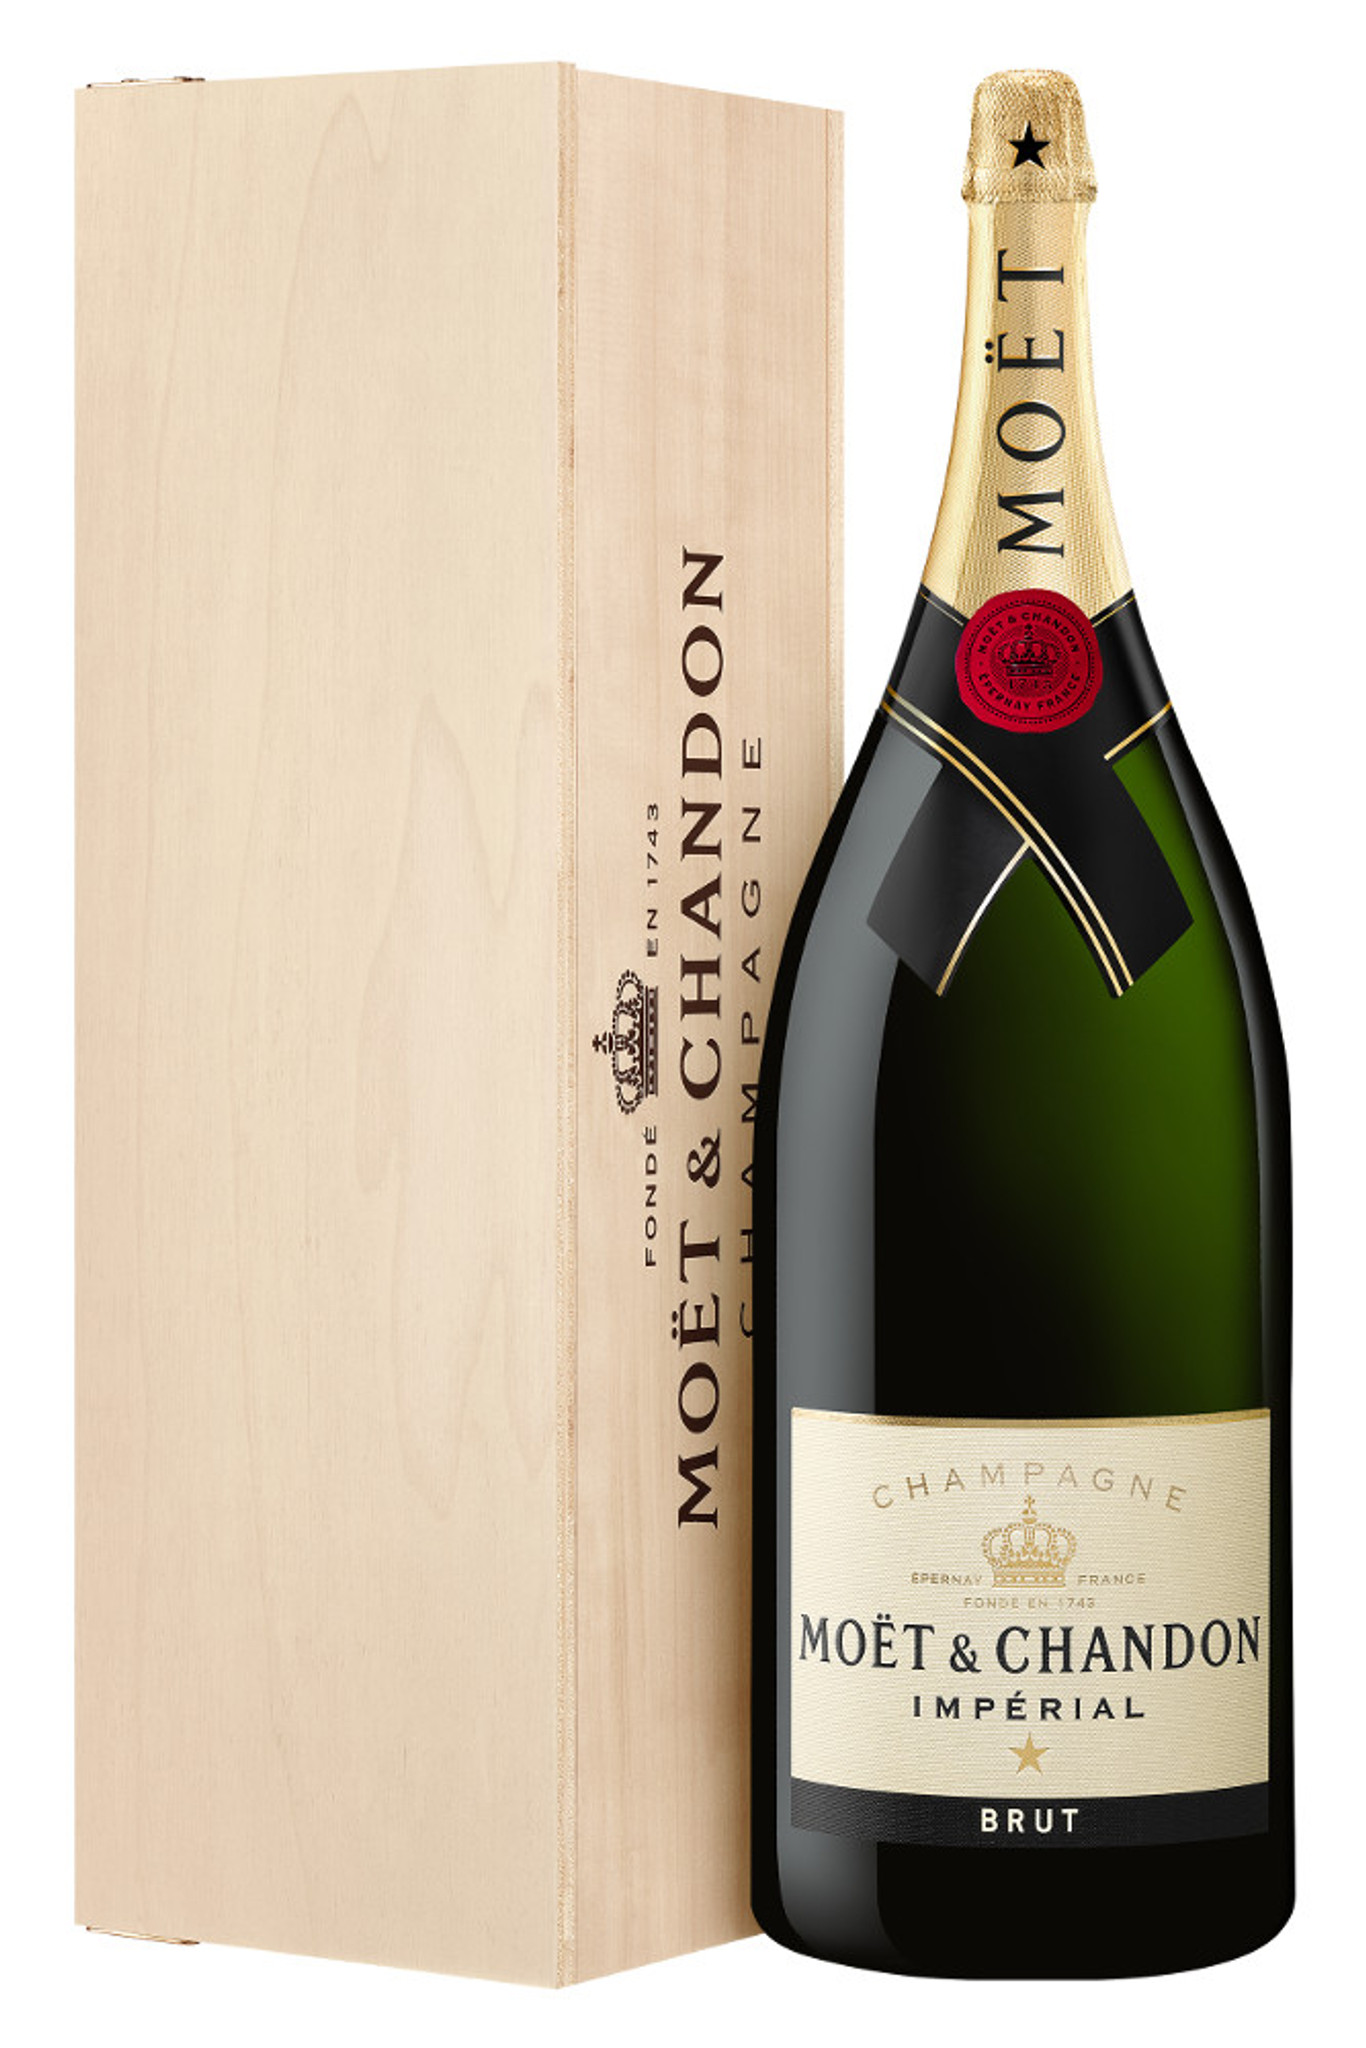 Moet & Chandon Brut Imperial, Champagne, France